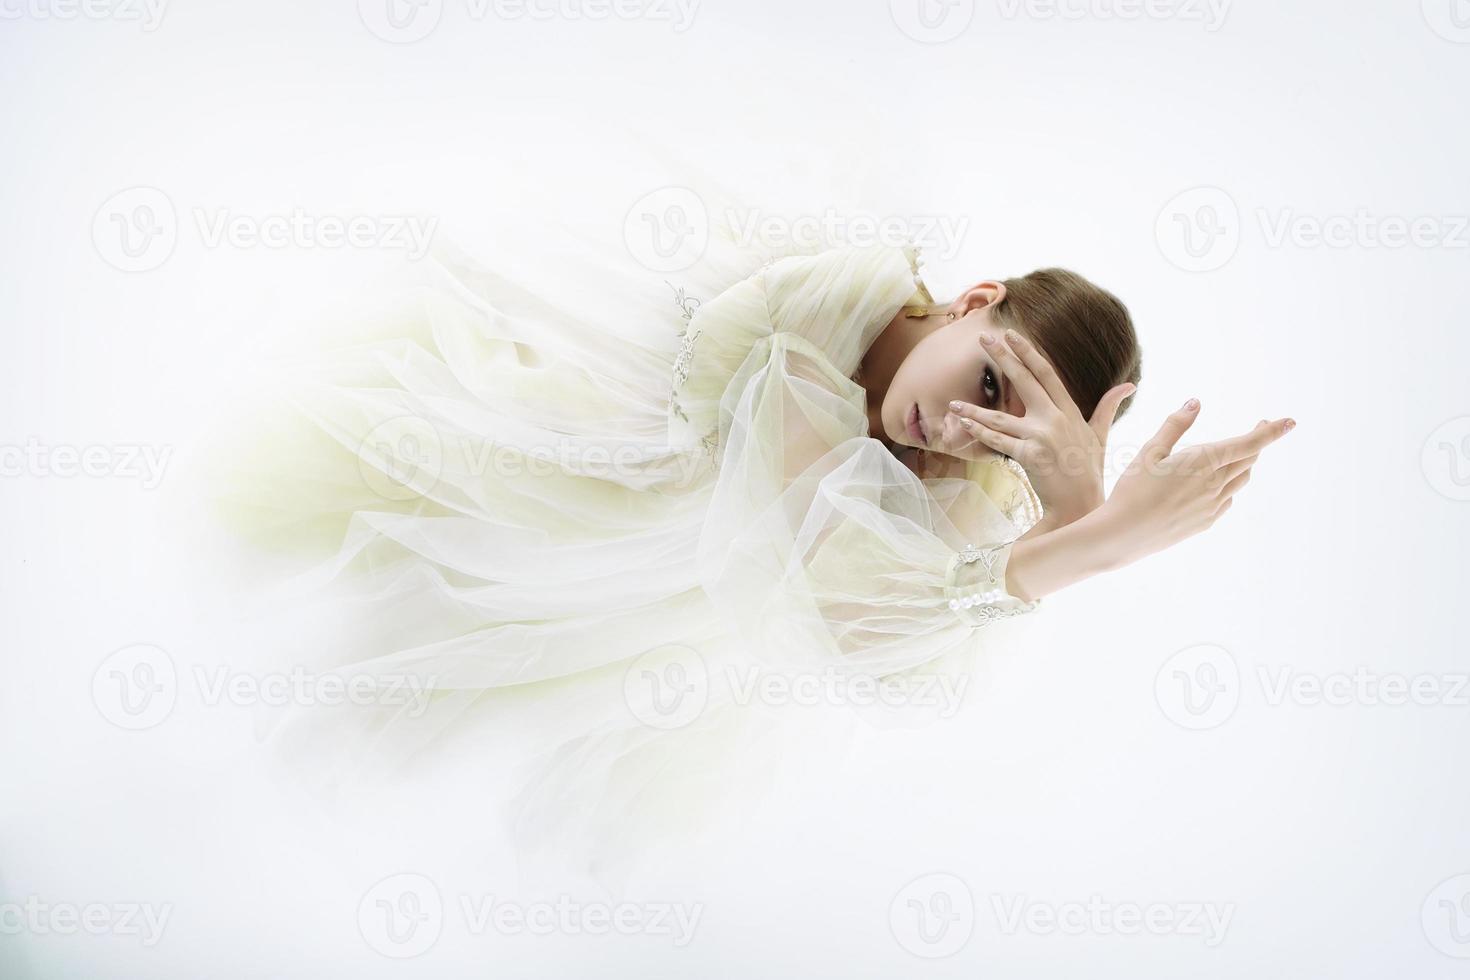 modèle de jeune fille dans un studio photo dans une robe de mariée est agenouillée avec ses bras levés et regardant à travers ses doigts